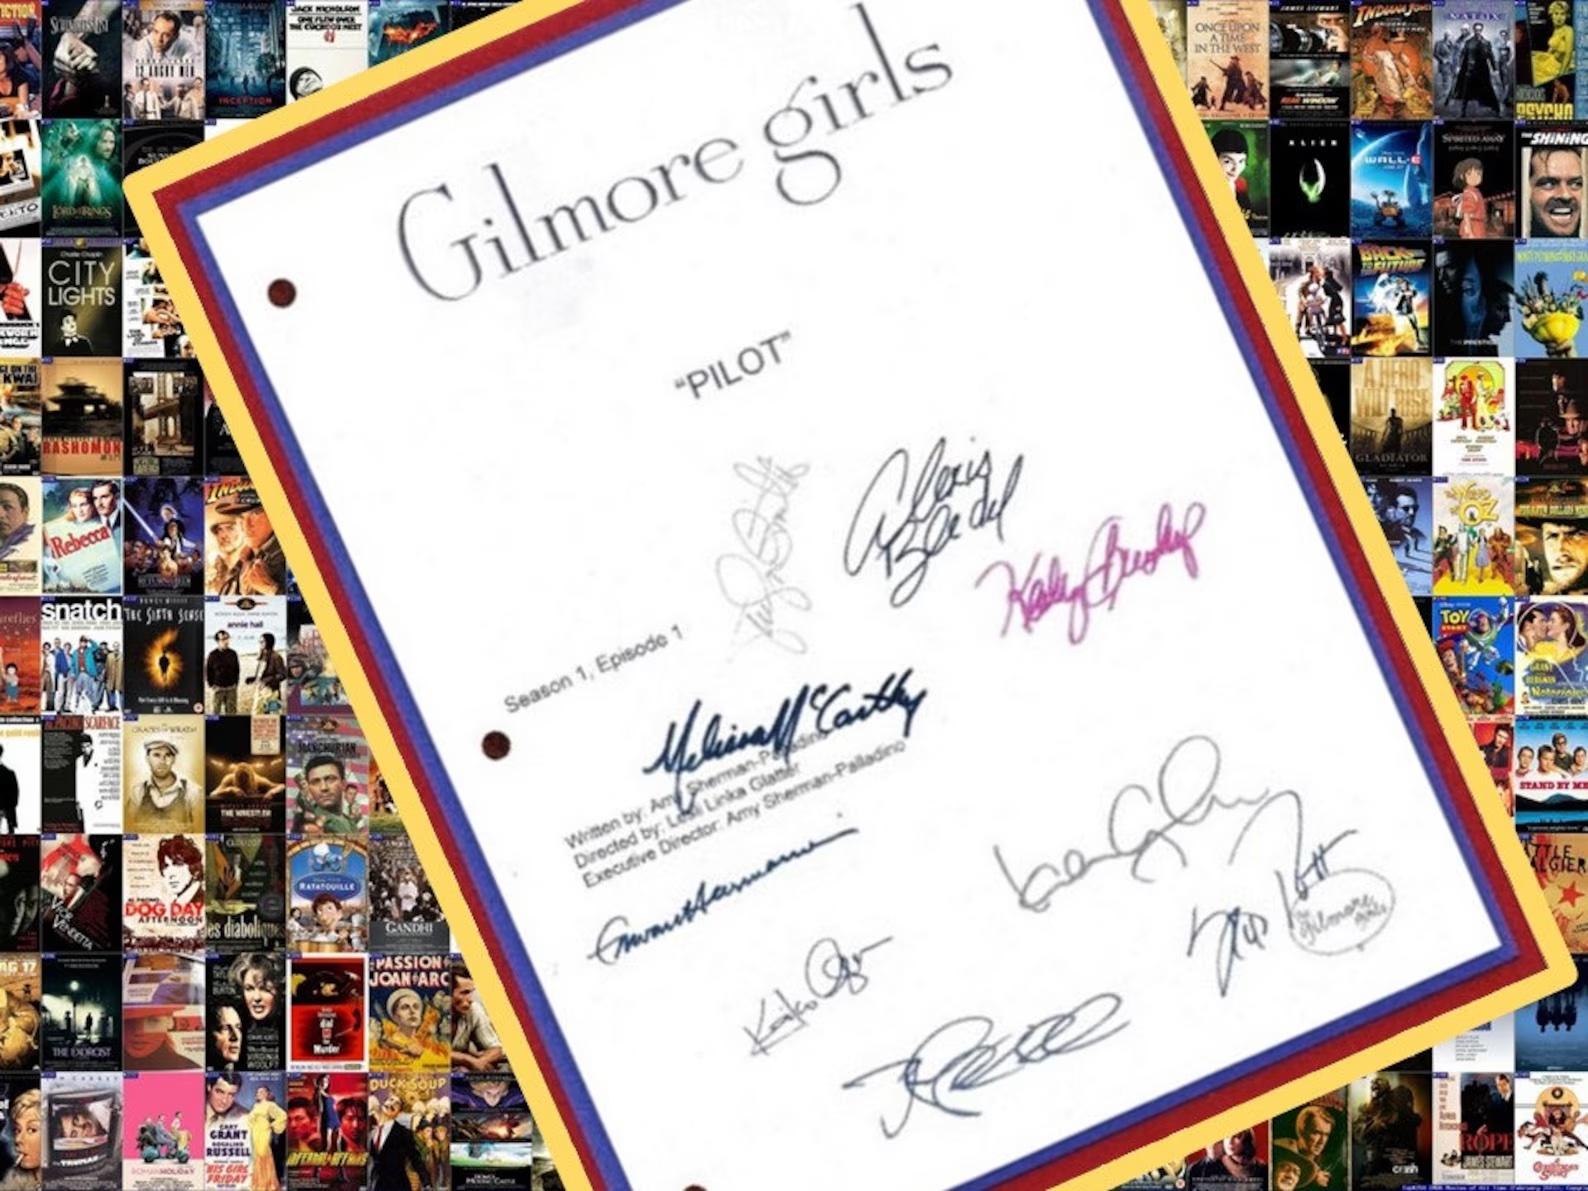 signerad kopia av manuset till piloten av Gilmore Girls